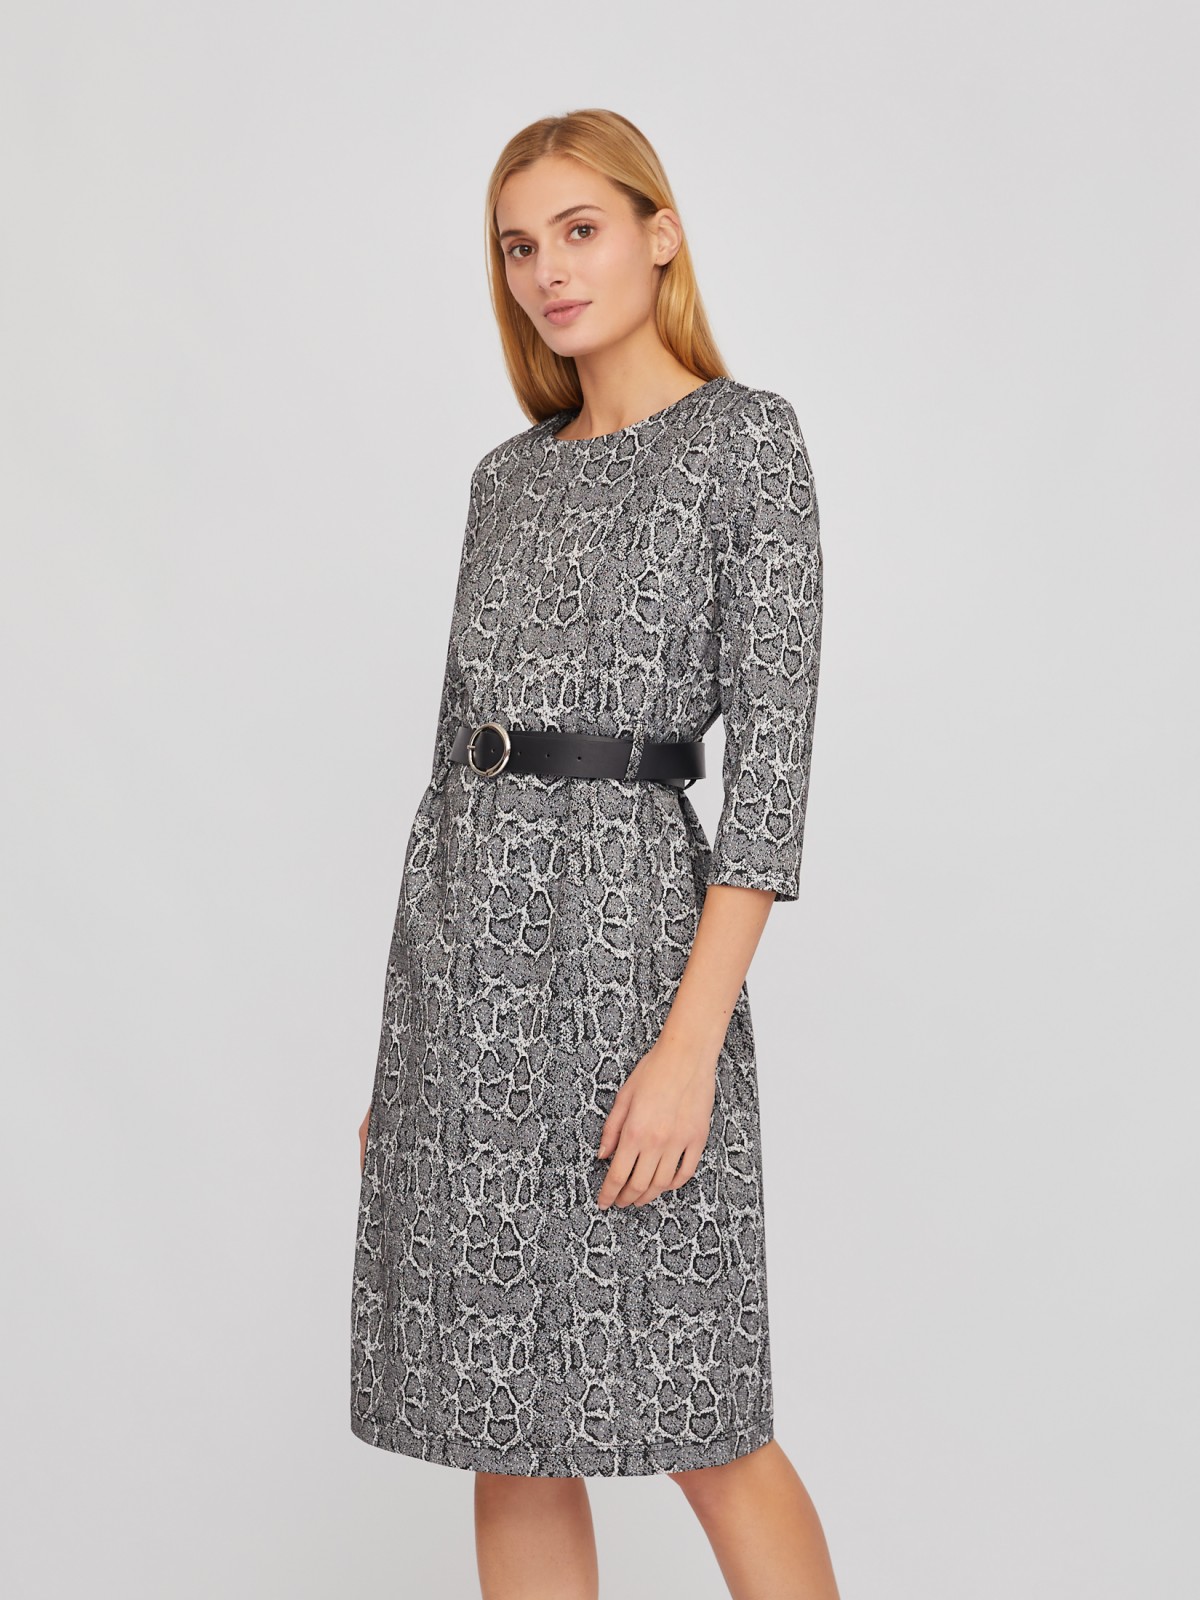 Трикотажное принтованное платье длины миди с ремнём на талии zolla 02411819F493, цвет серый, размер S